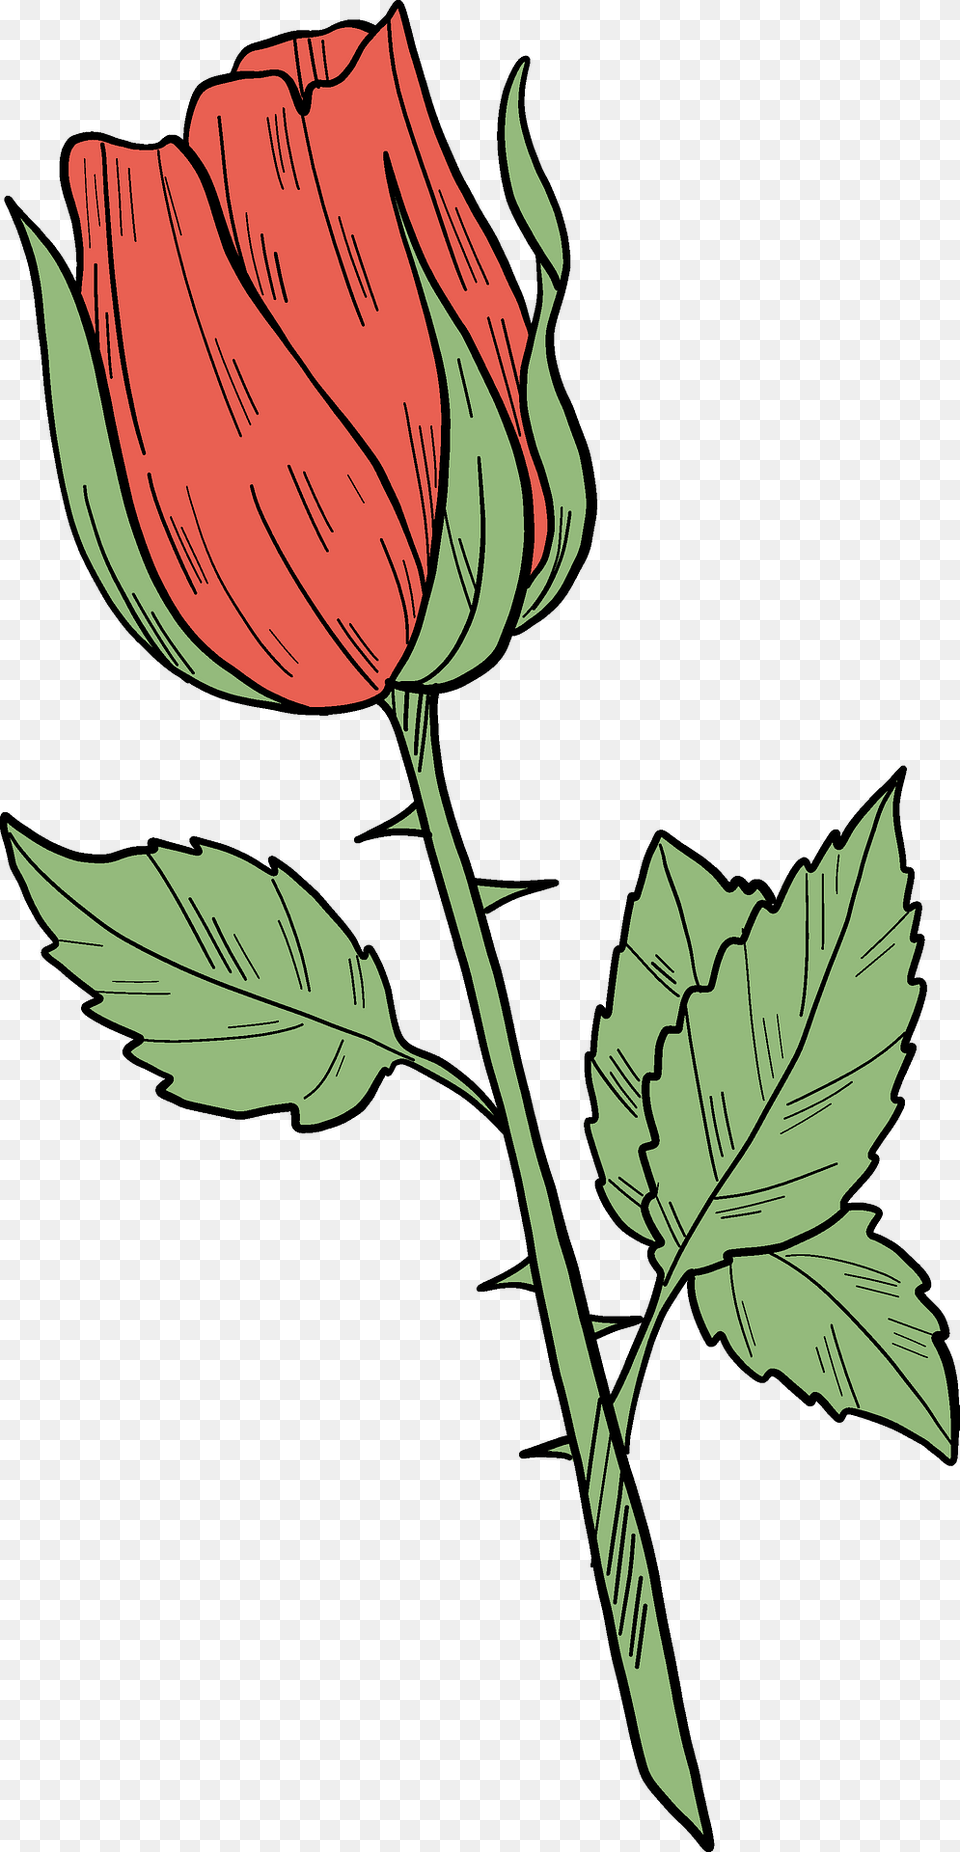 Red Rose Clipart, Flower, Plant, Leaf, Art Free Transparent Png